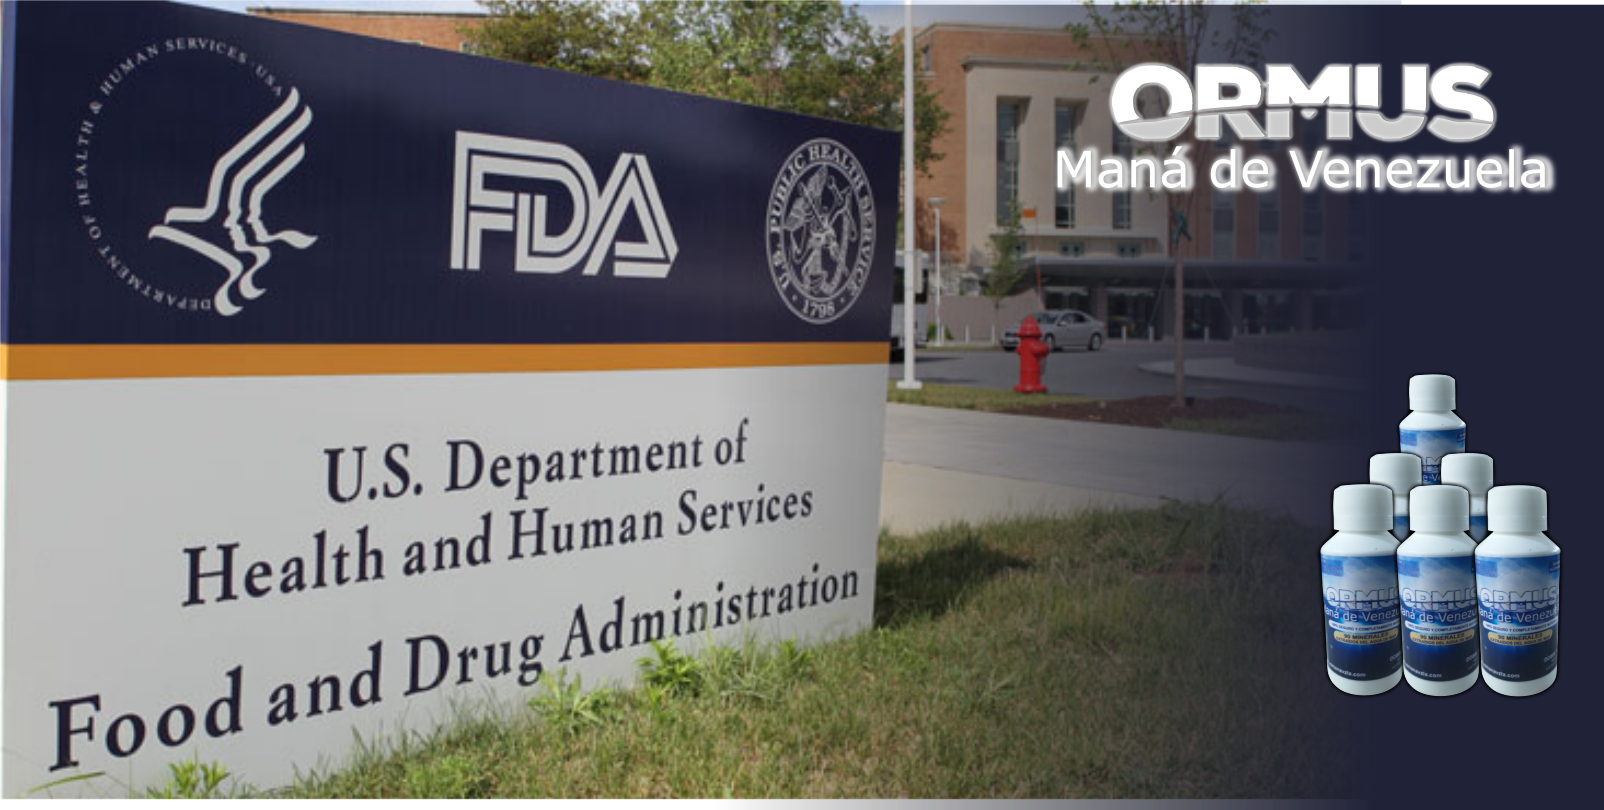 La FDA regula el Ormus